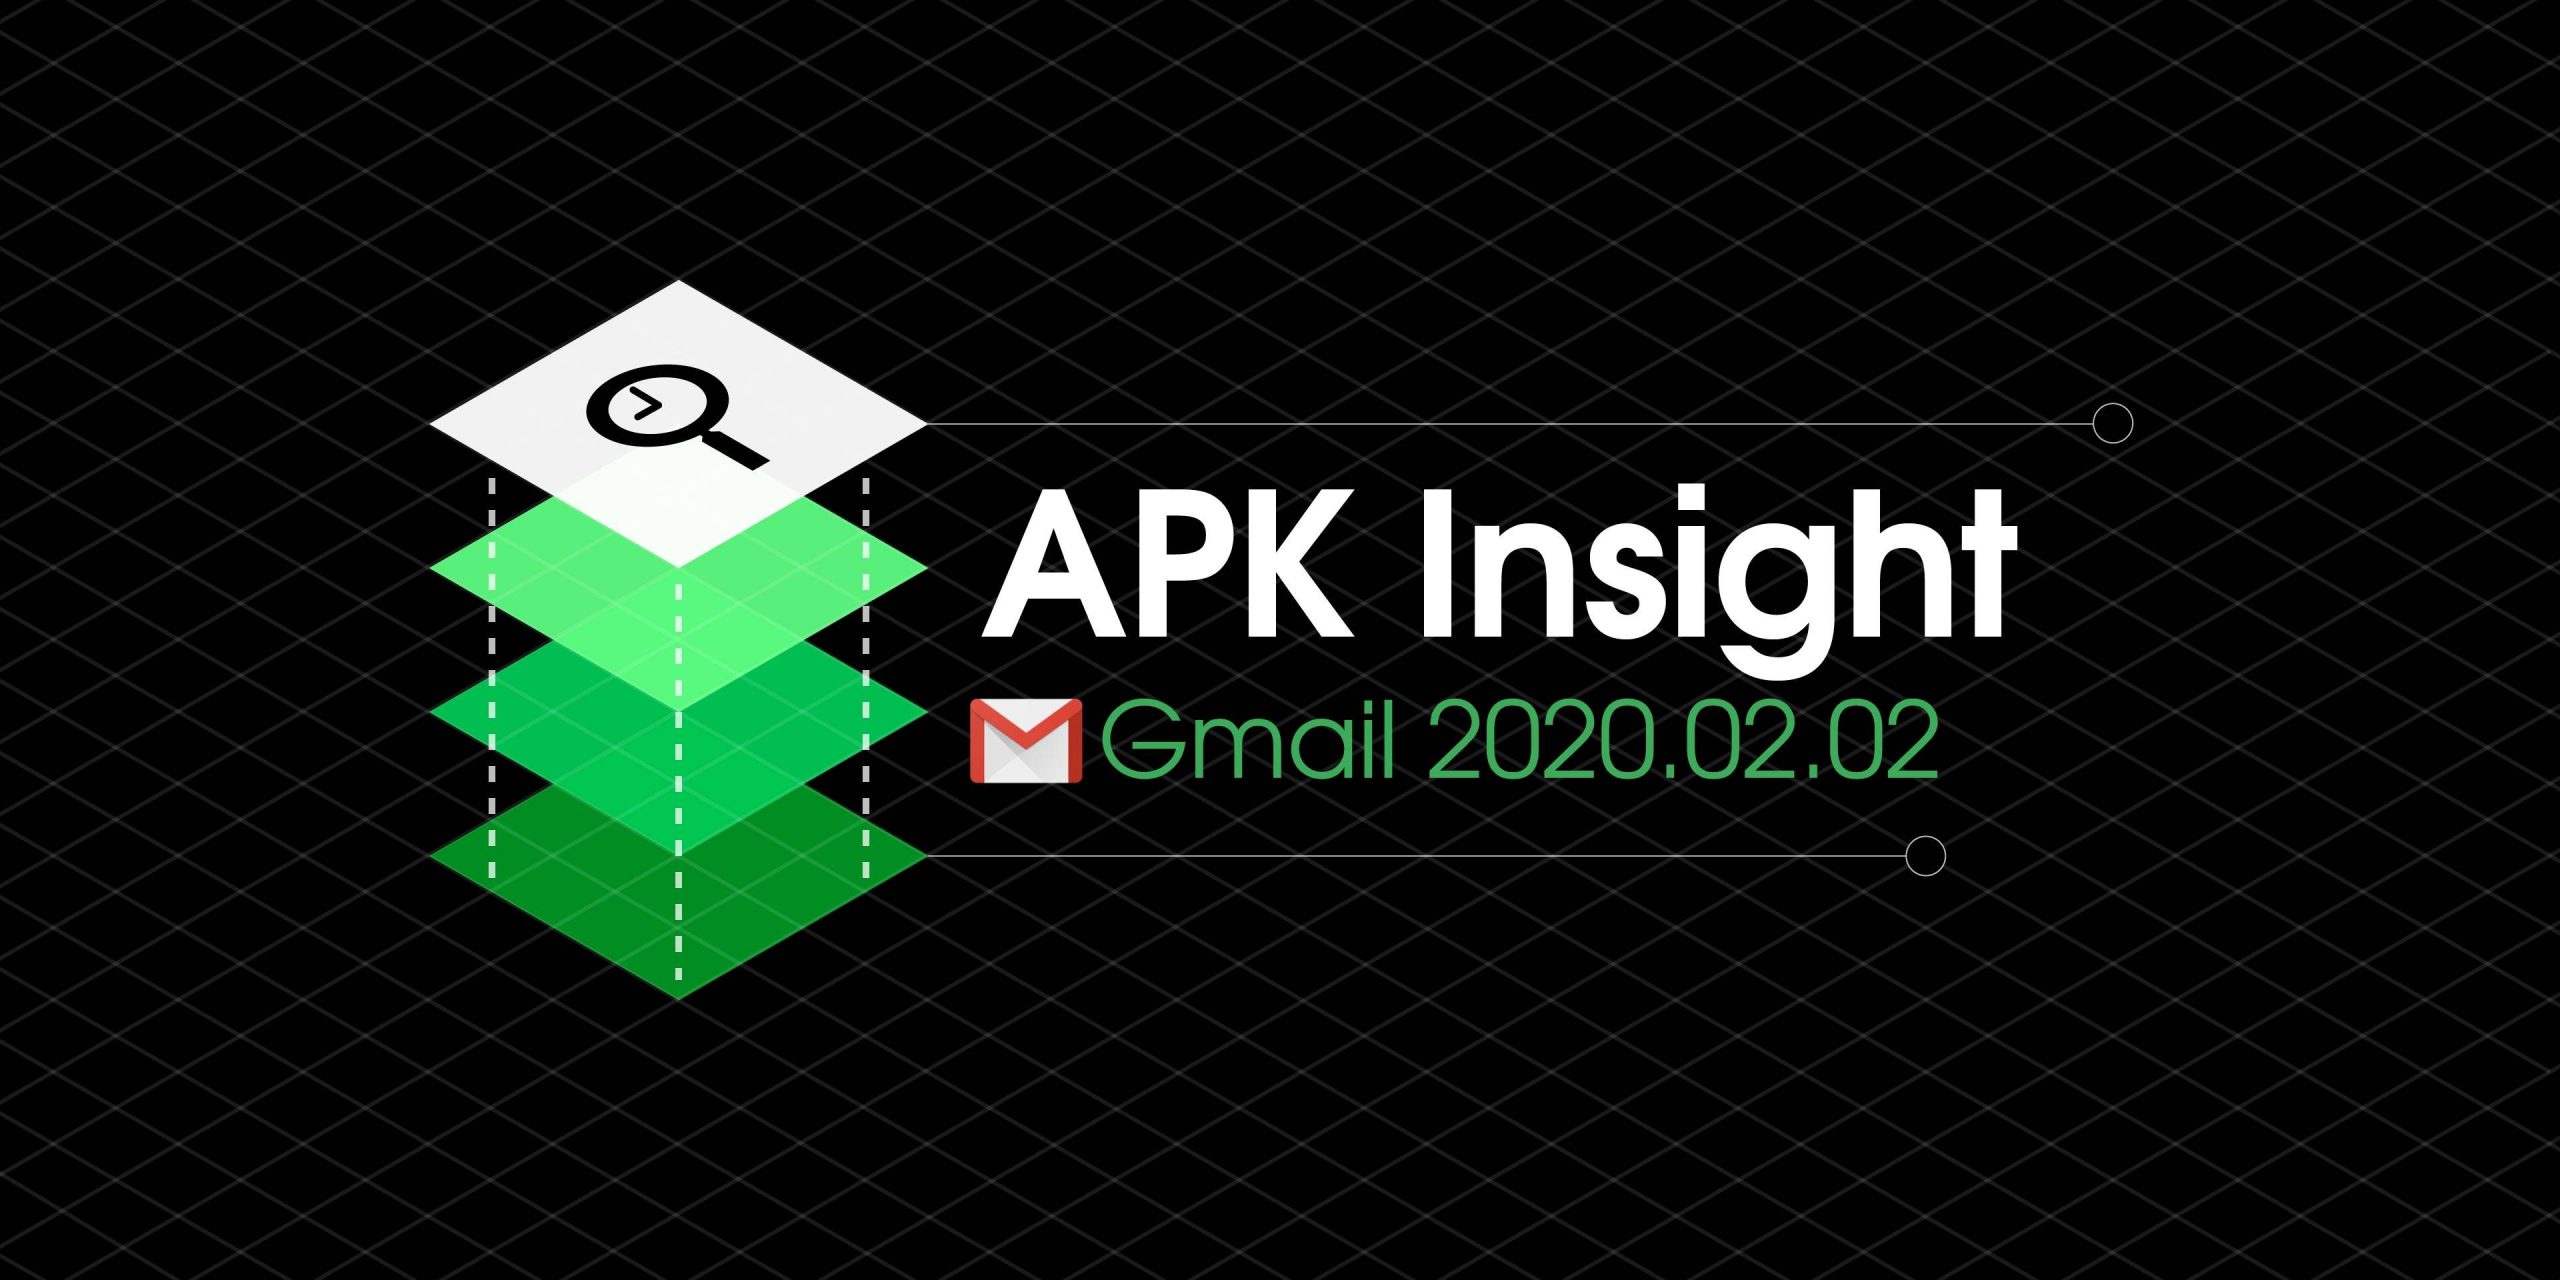 O Gmail 2020.02.02 sugere 'Pacotes' semelhantes aos da Caixa de entrada com 'Marcadores' e 'Cartão de e-mail inteligente' [APK Insight]